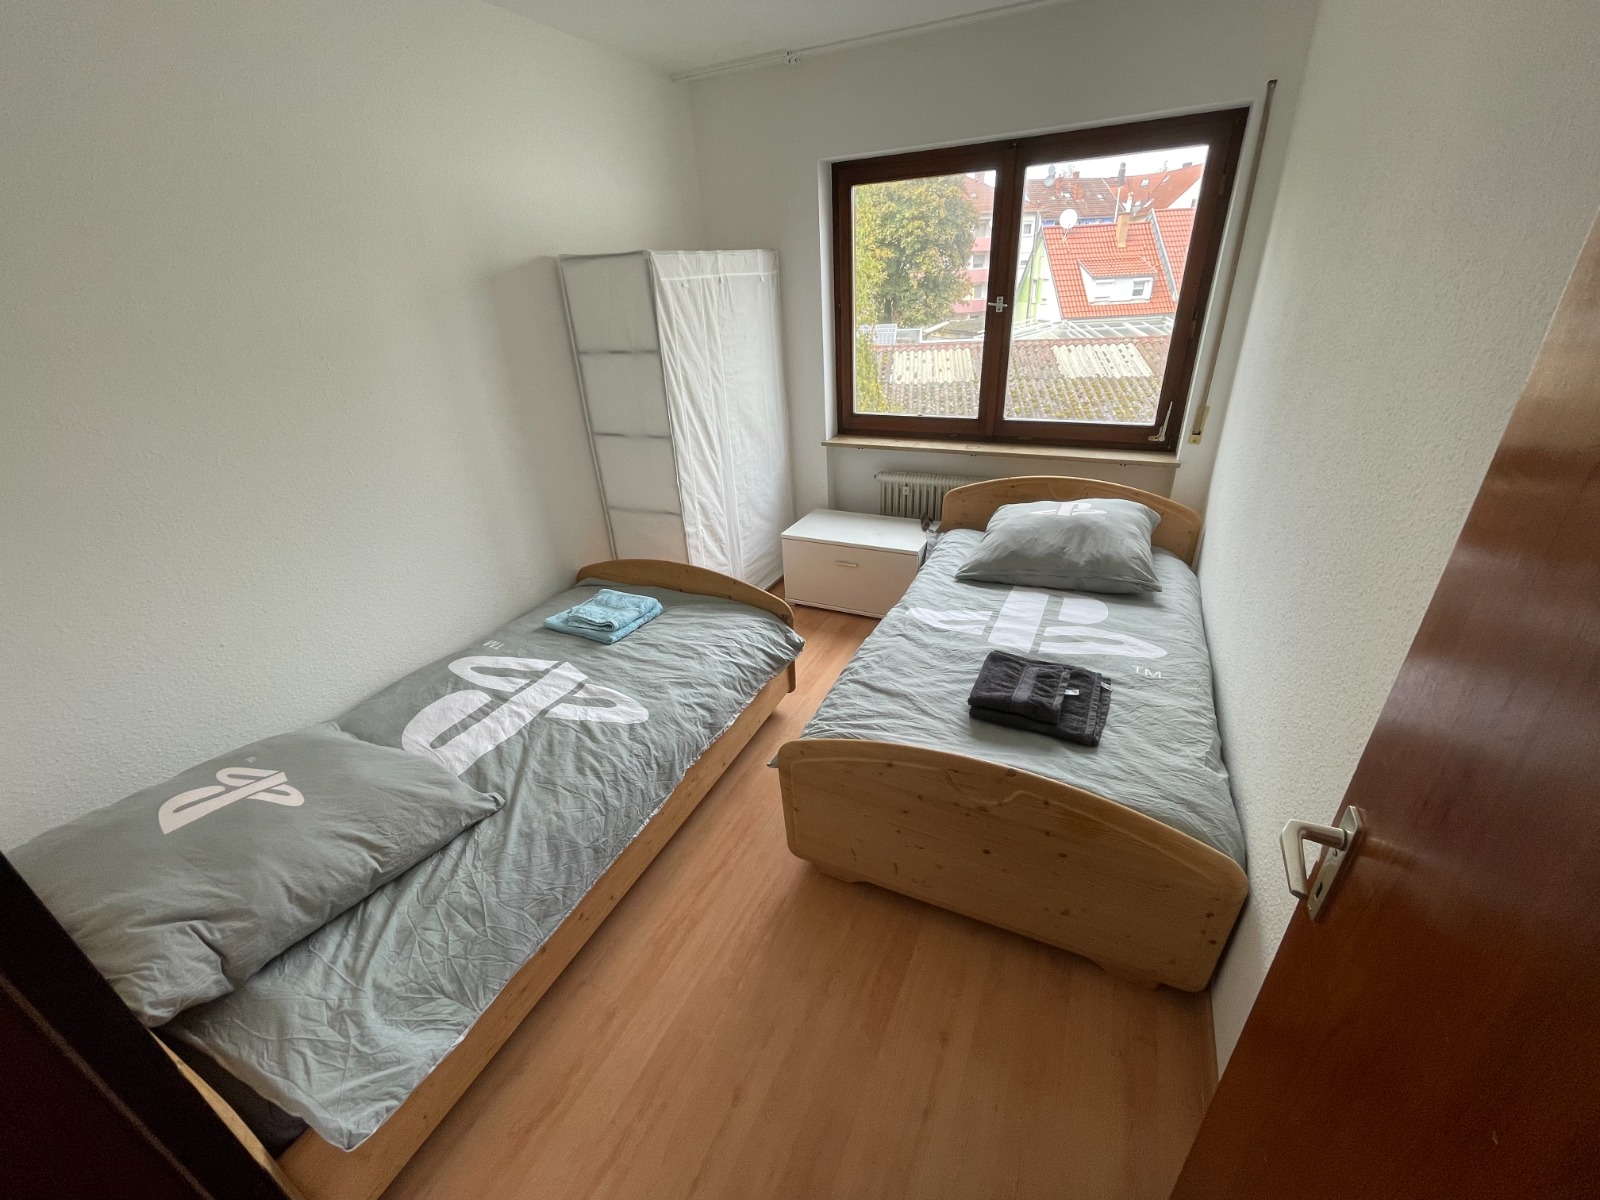 Wohnung 4 in der Wollhausstrasse Heilbronn